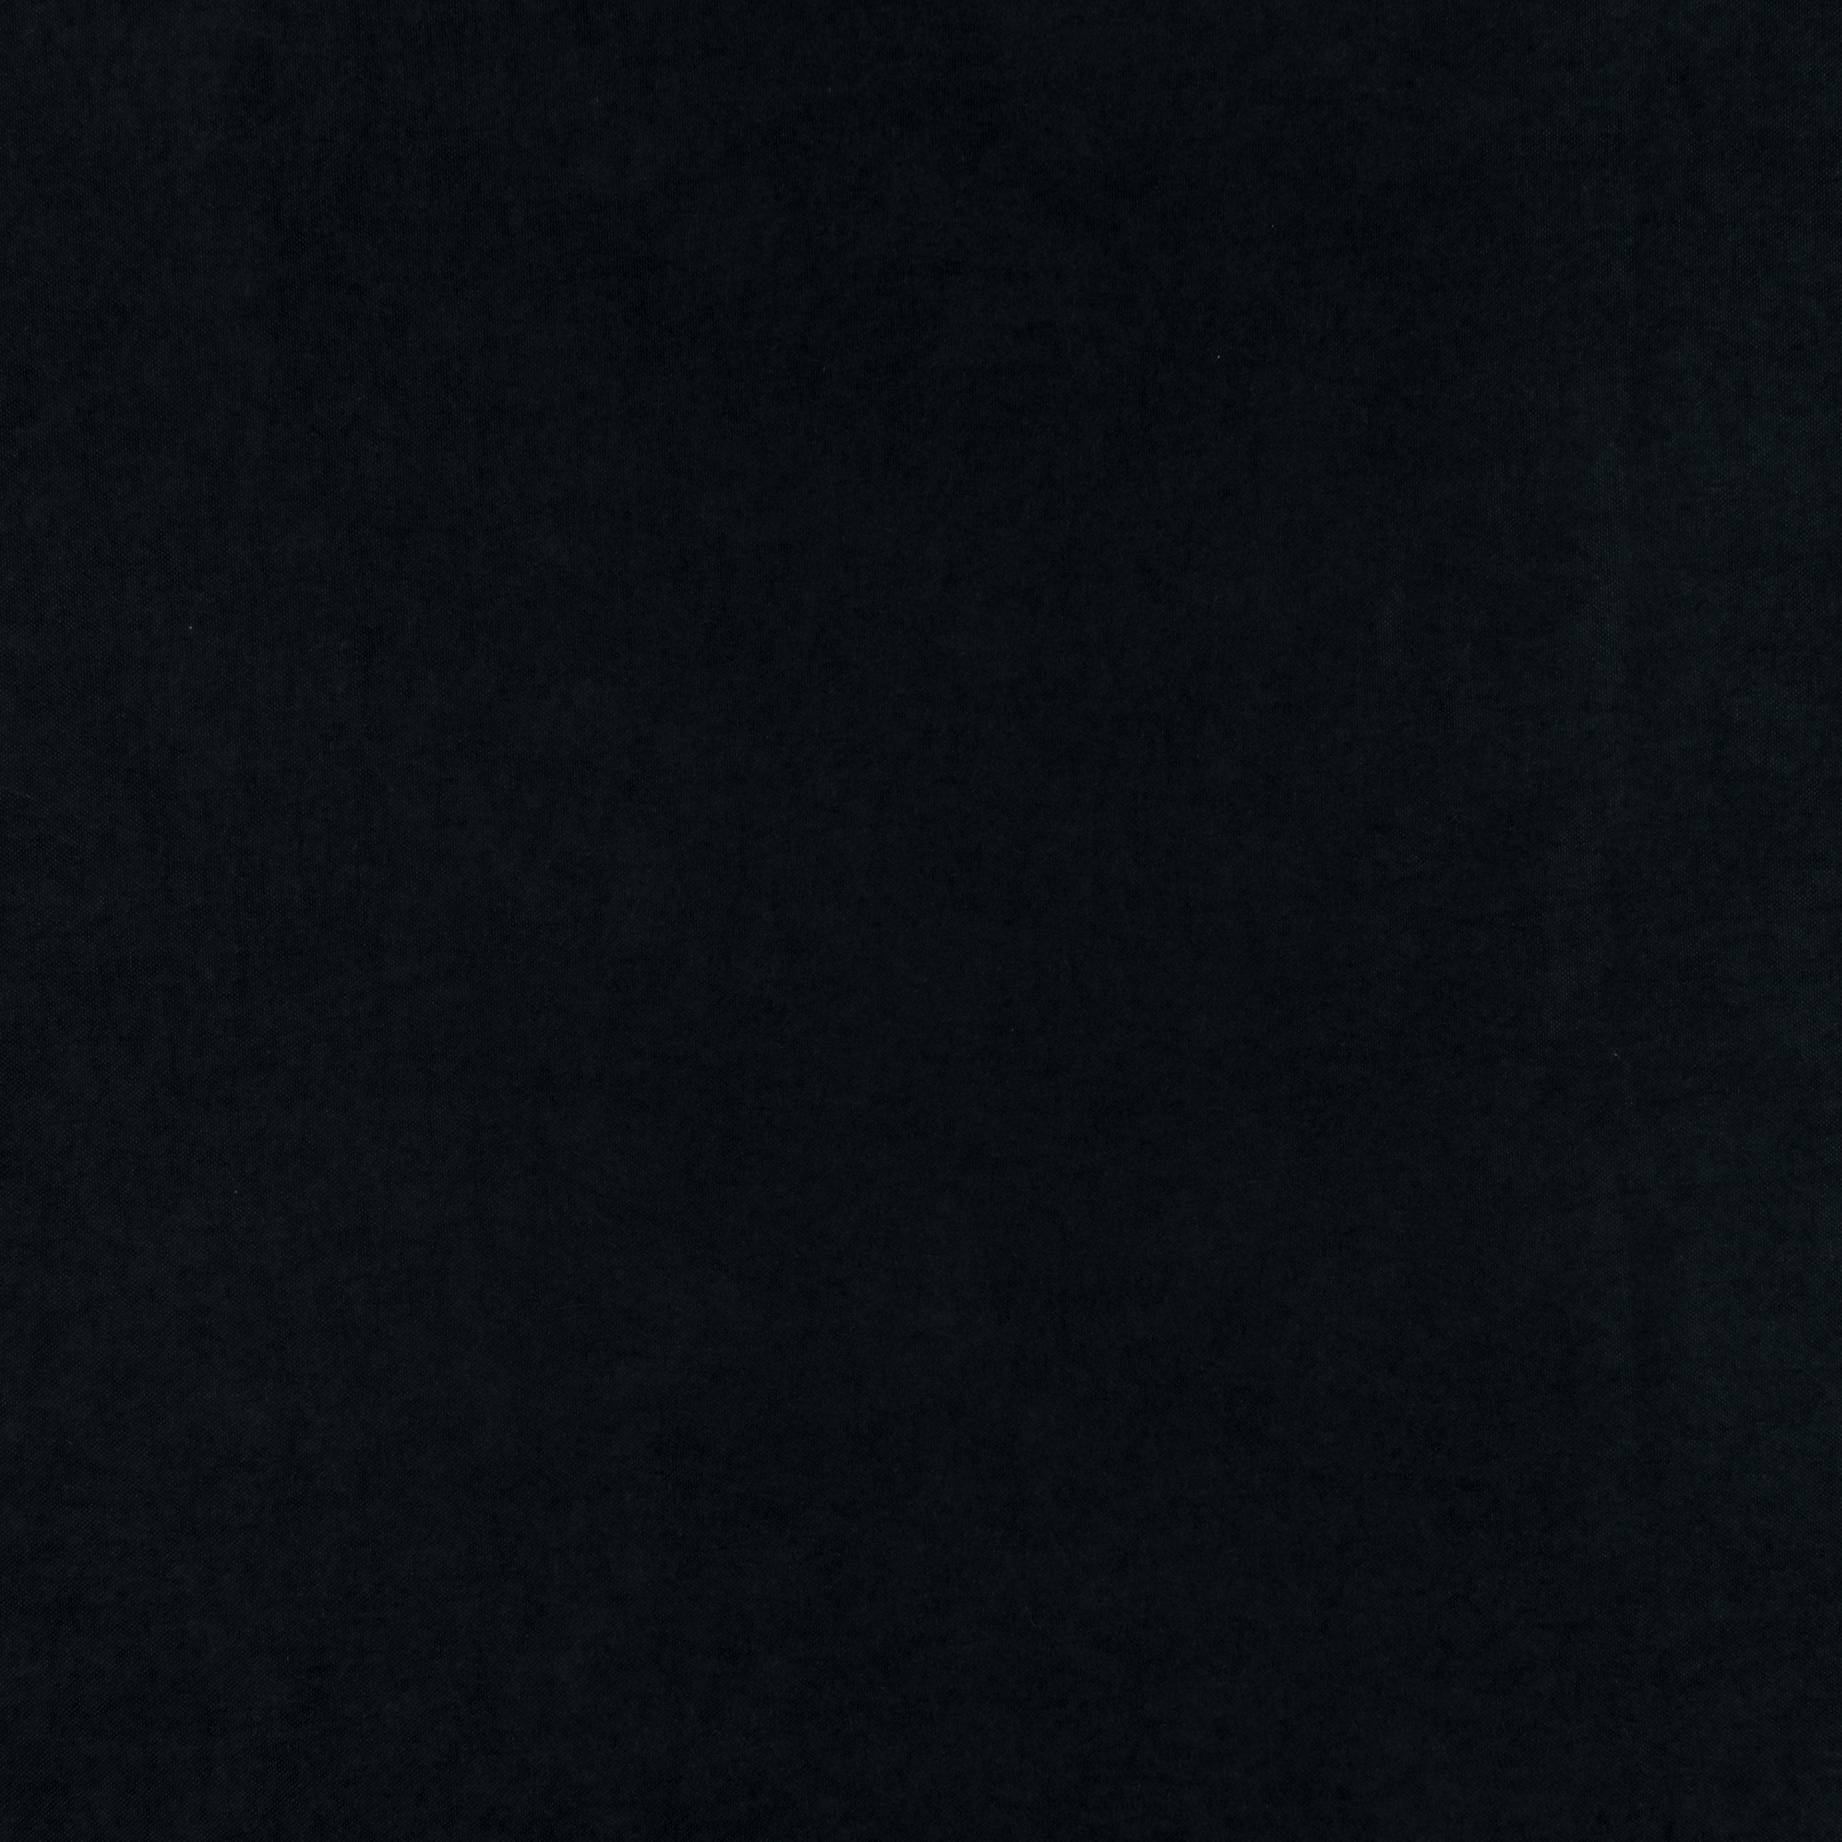 Декоративный нубук, Арвин 2, Канвас Даймонд, черный, полиэстер 100%, 205 г/м2, 50х30 см